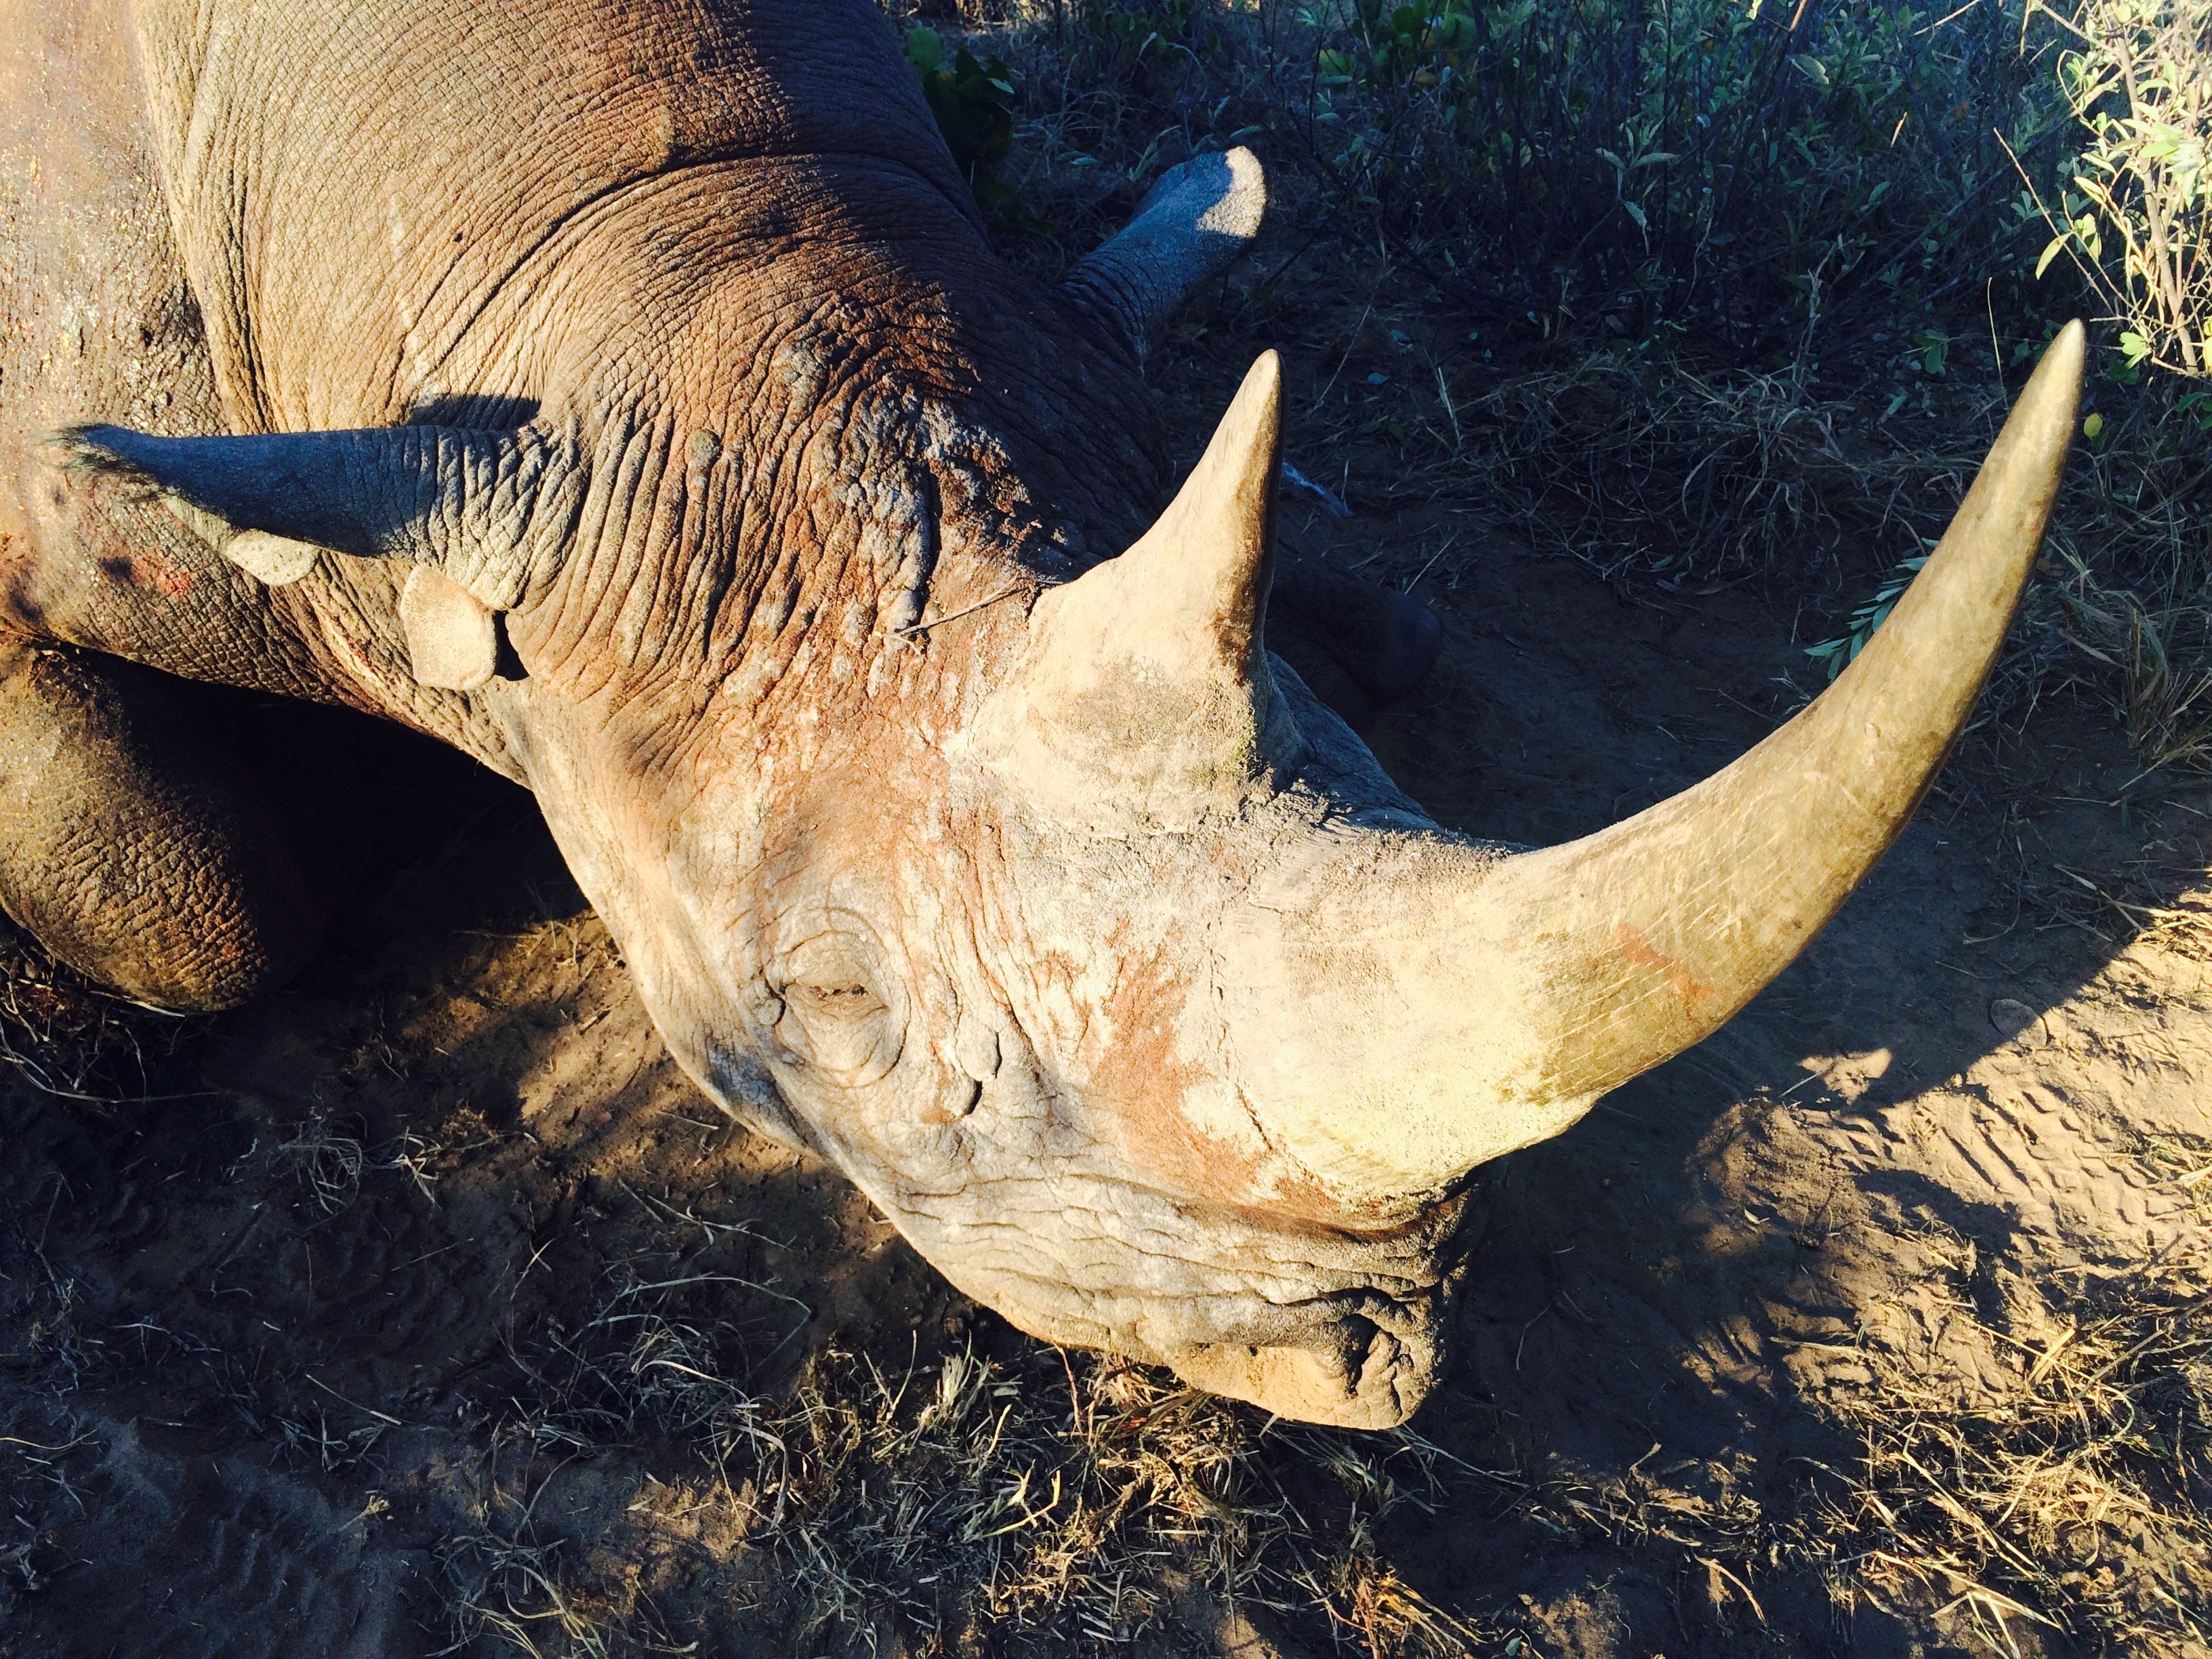 Un cazador texano afirma que está colaborando a la conservación de la especie al cazar a un rinoceronte negro. (Crédito: Jason Morris/CNN)